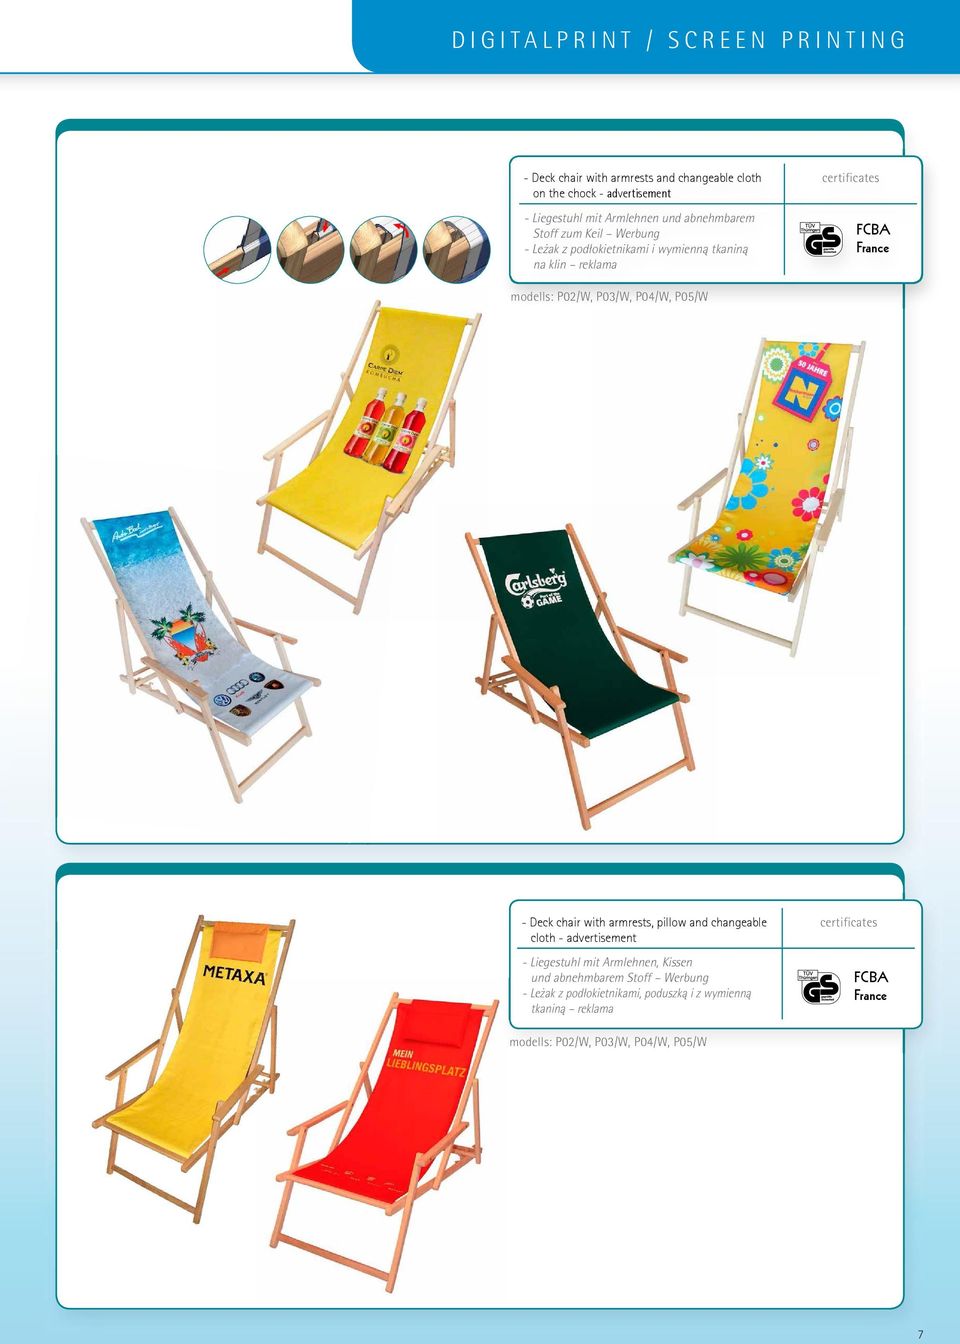 Stoff zum Keil Werbung - Leżak z podłokietnikami i wymienną tkaniną na klin reklama FCBA France modells: P02/W, P03/W, P04/W, P05/W - Deck chair with armrests, pillow and changeable cloth -